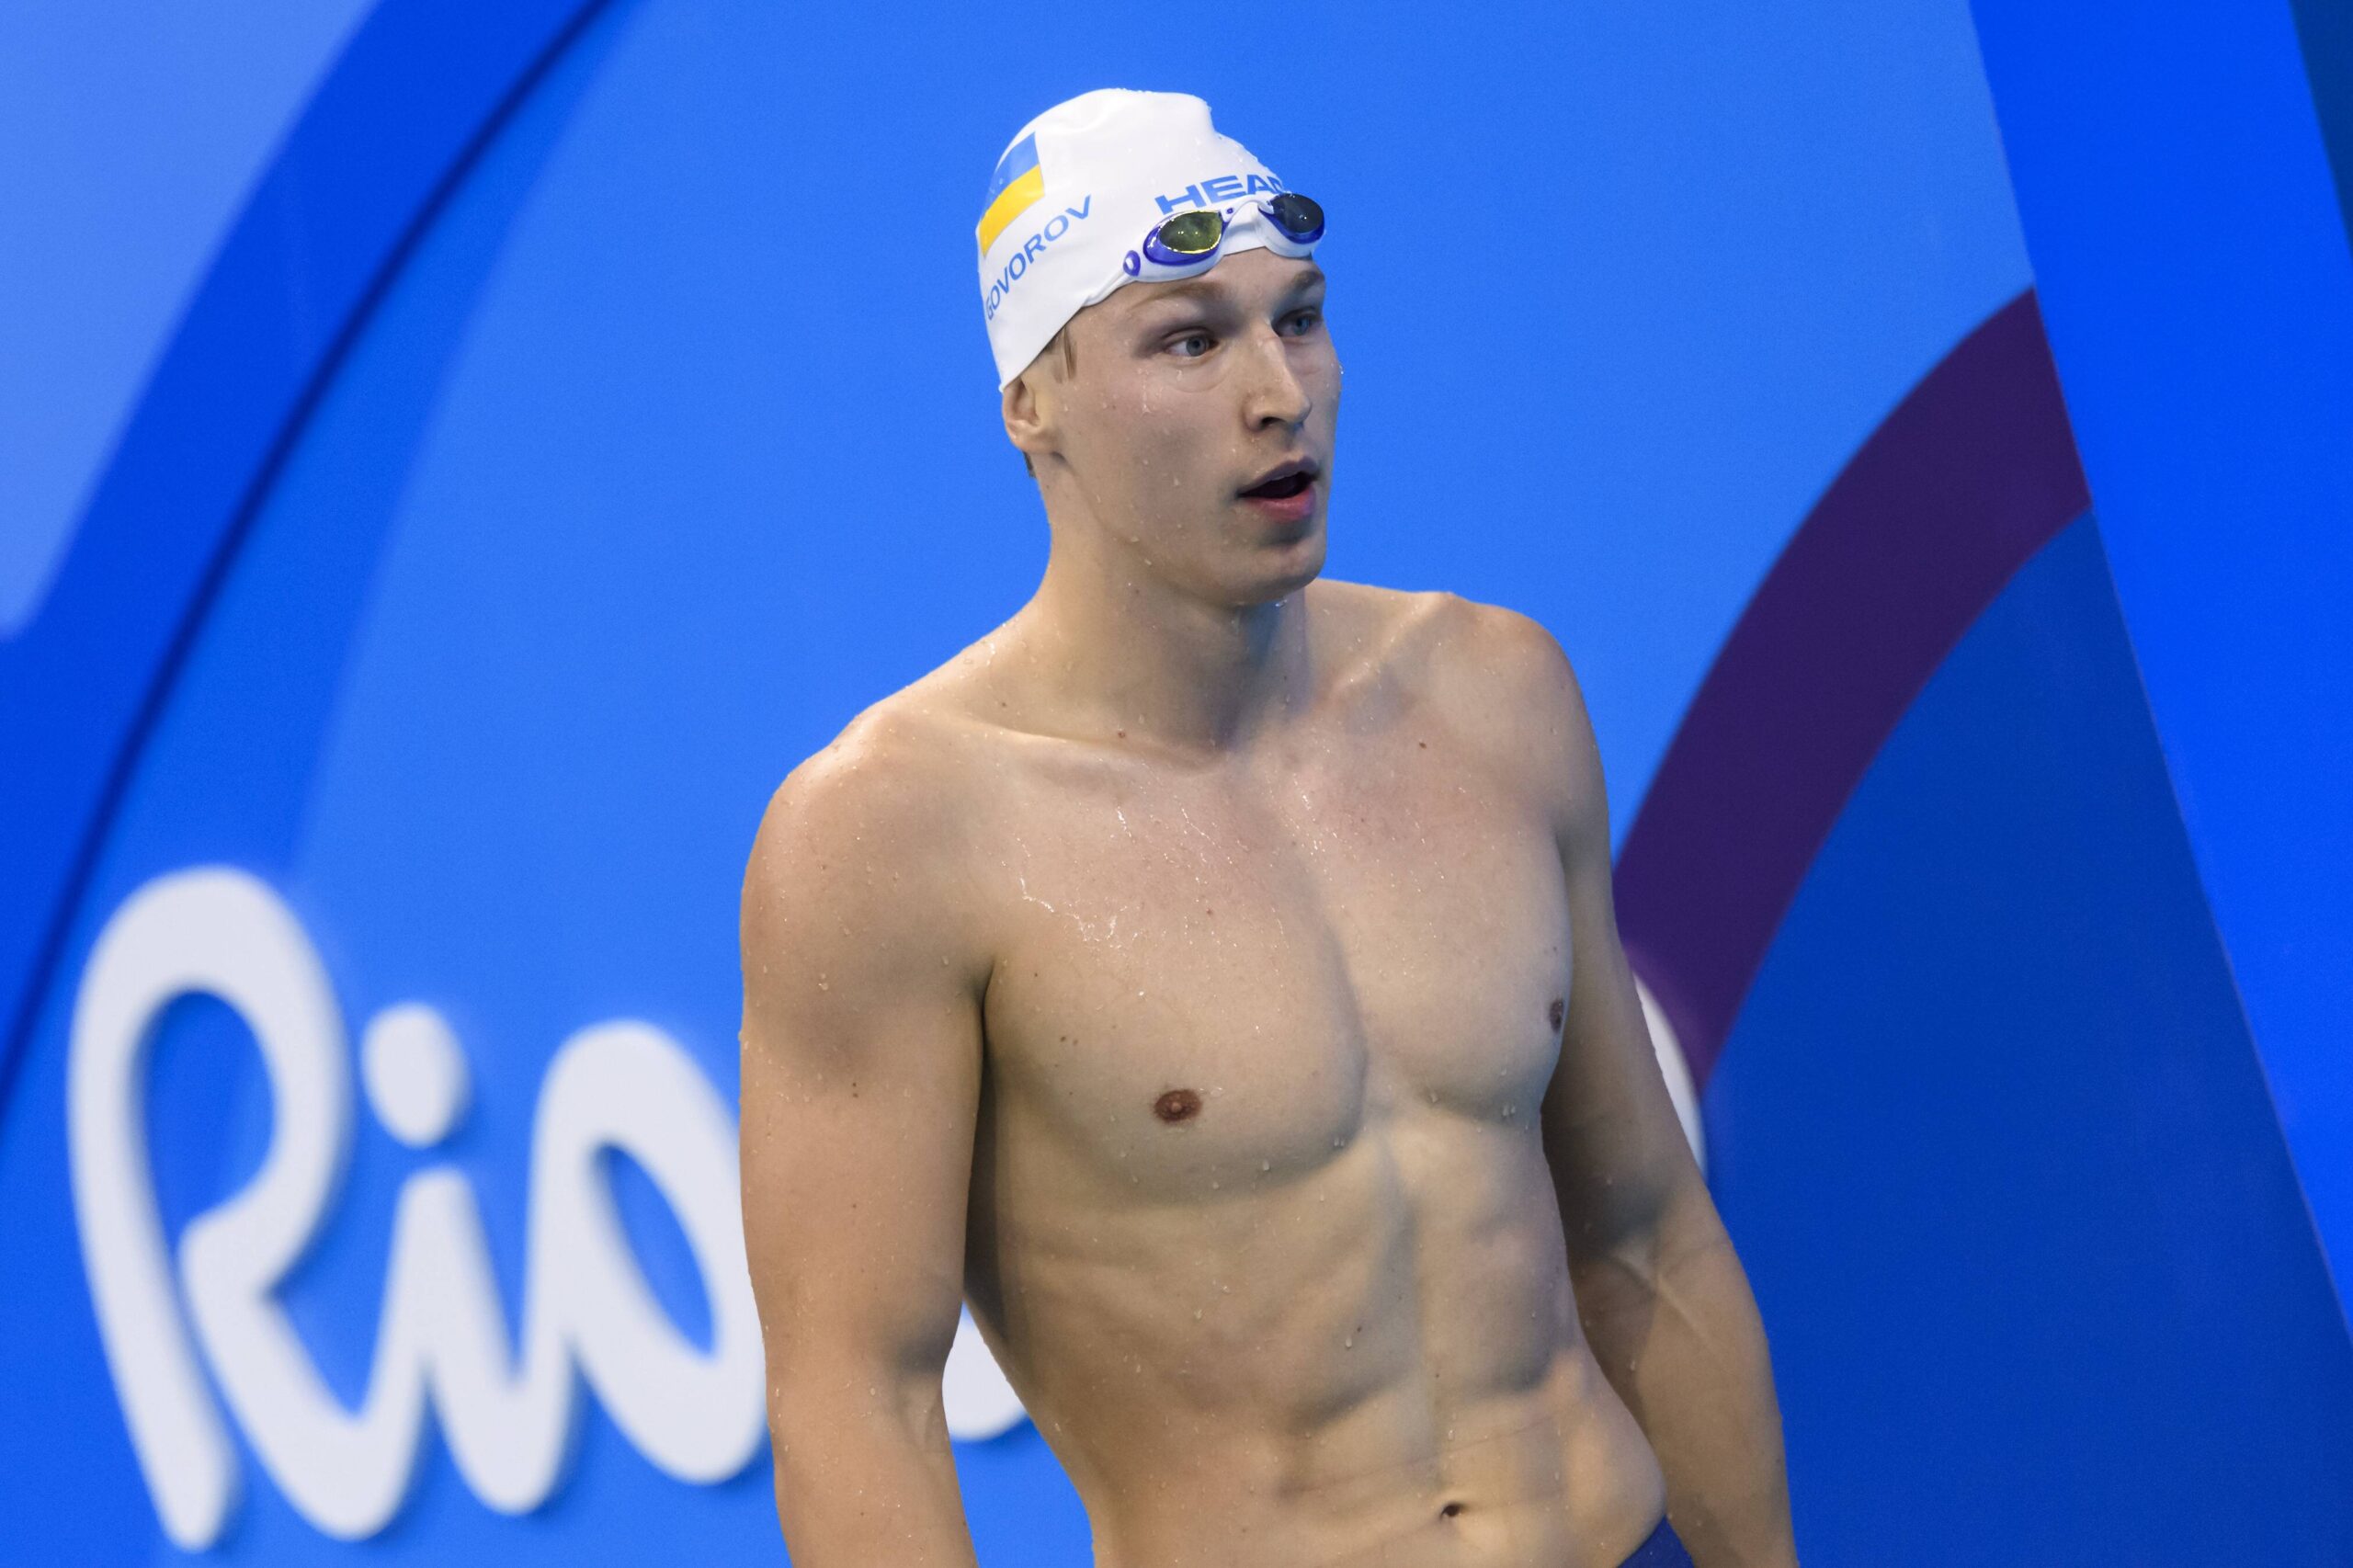 Ukrainischer Schwimmer Govorov will härtere Sanktionen für Russland